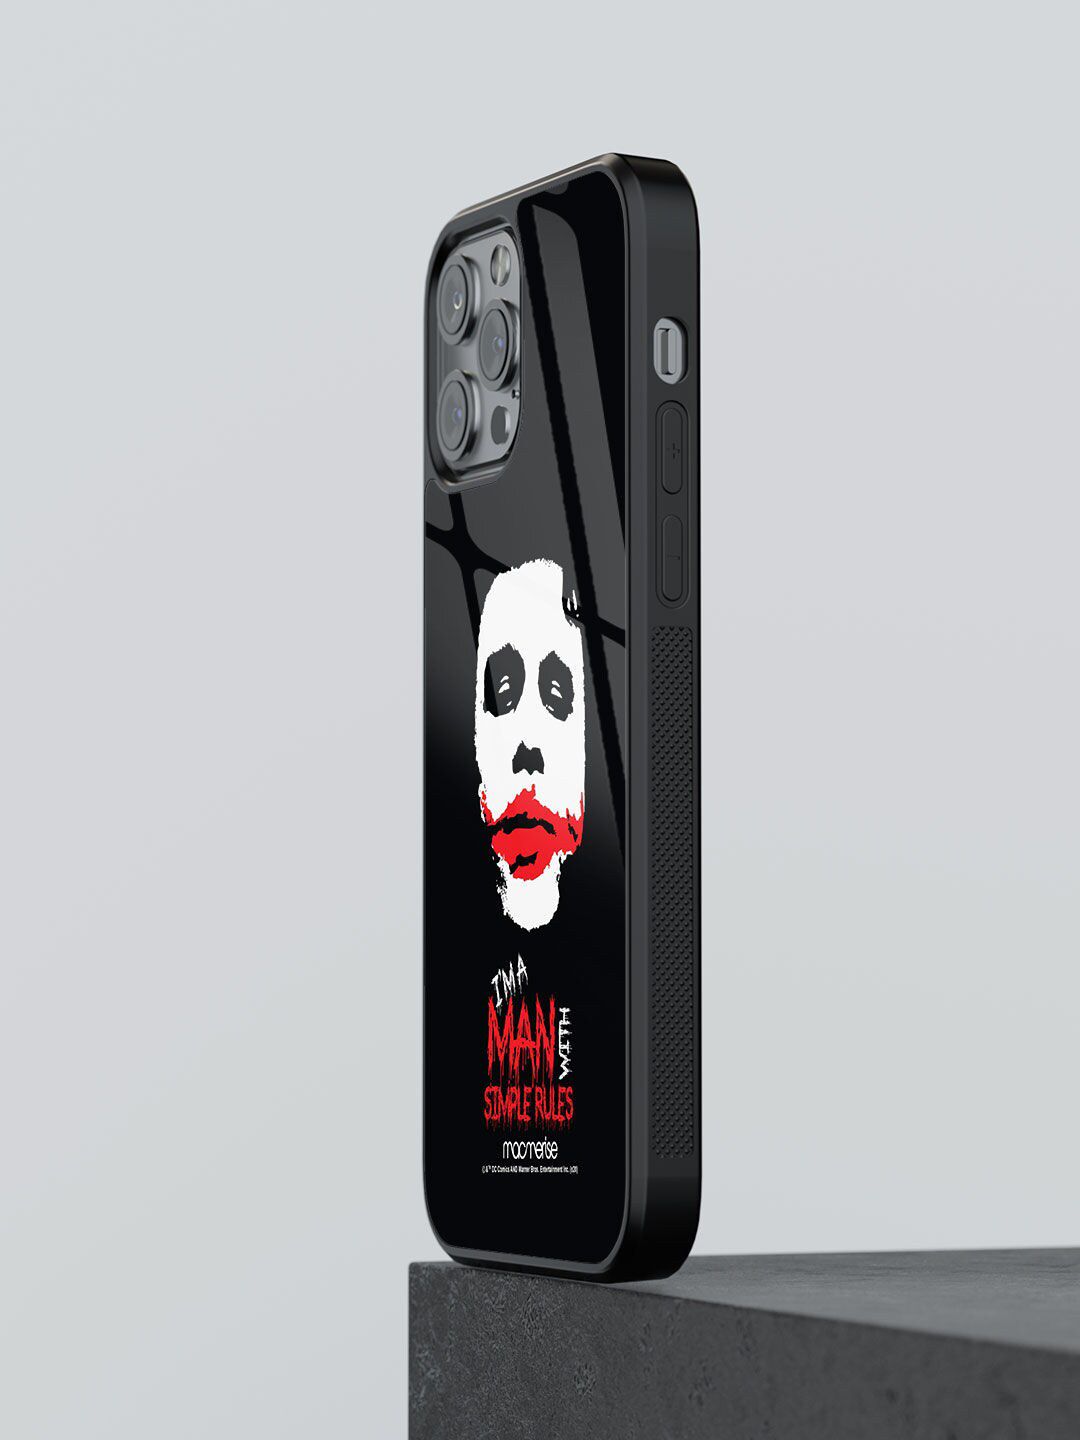 macmerise Black & White Printed iPhone 13 Pro Max Phone Cases Price in India